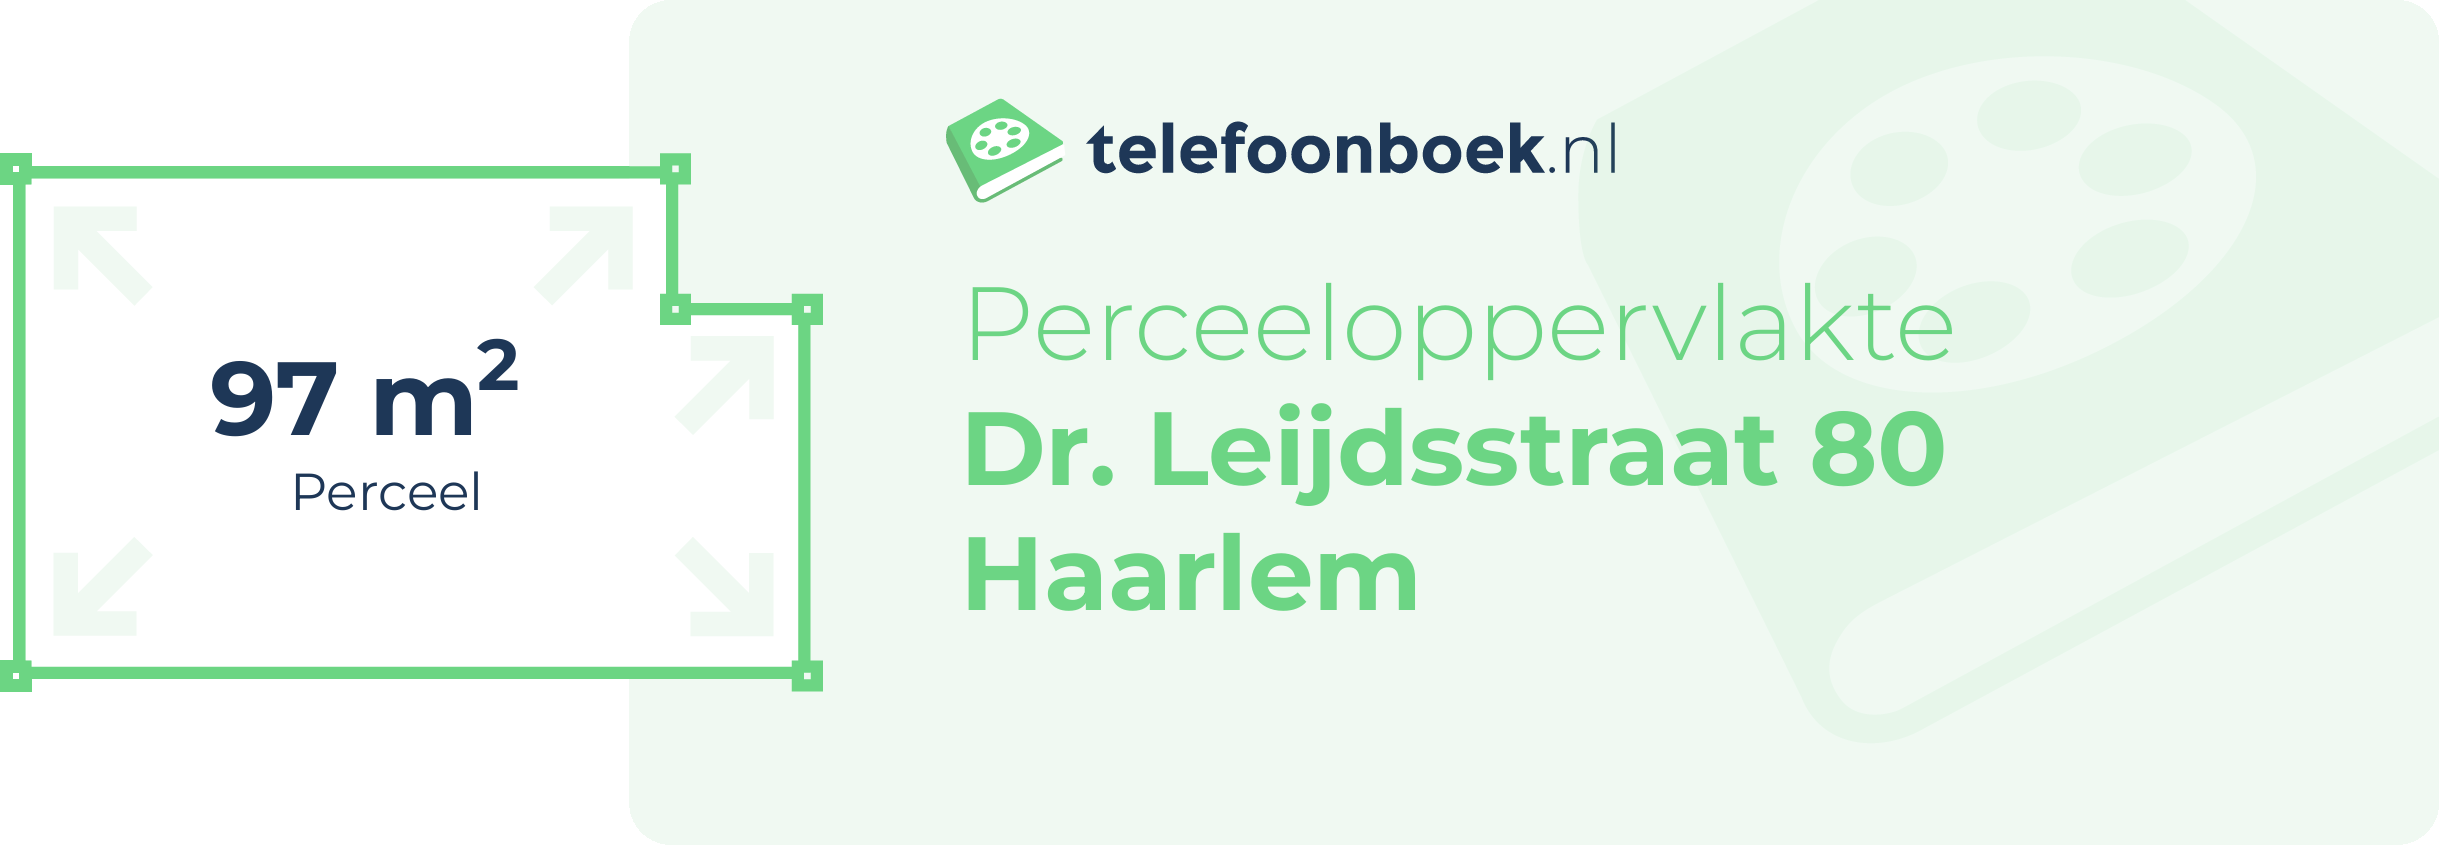 Perceeloppervlakte Dr. Leijdsstraat 80 Haarlem